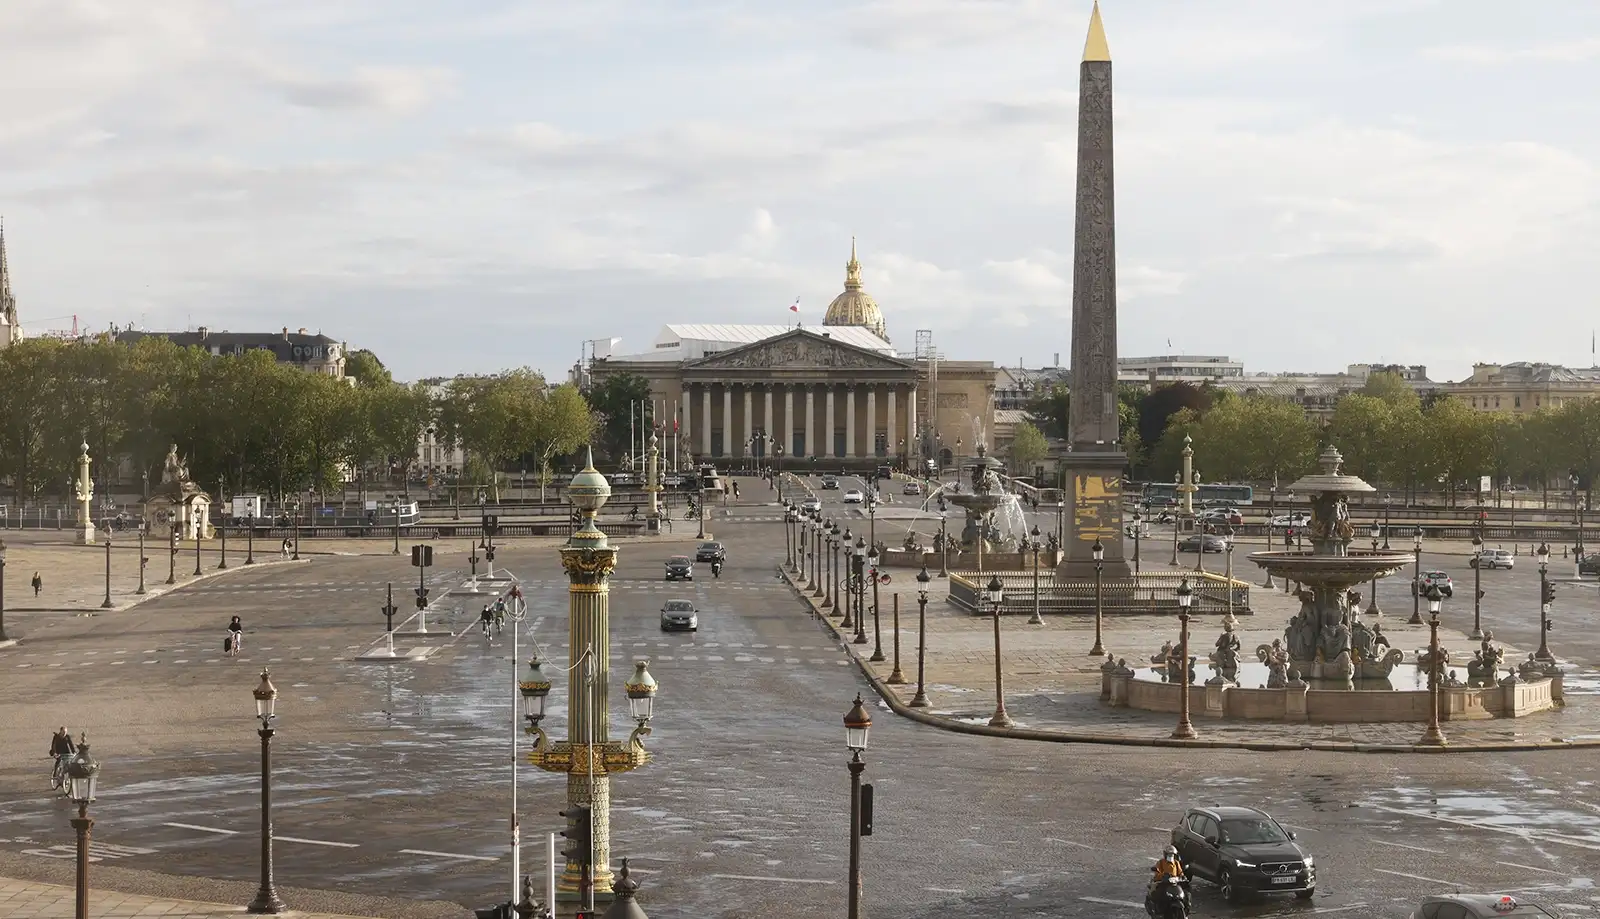 Quảng trường Concorde - quảng trường lớn nhất Paris